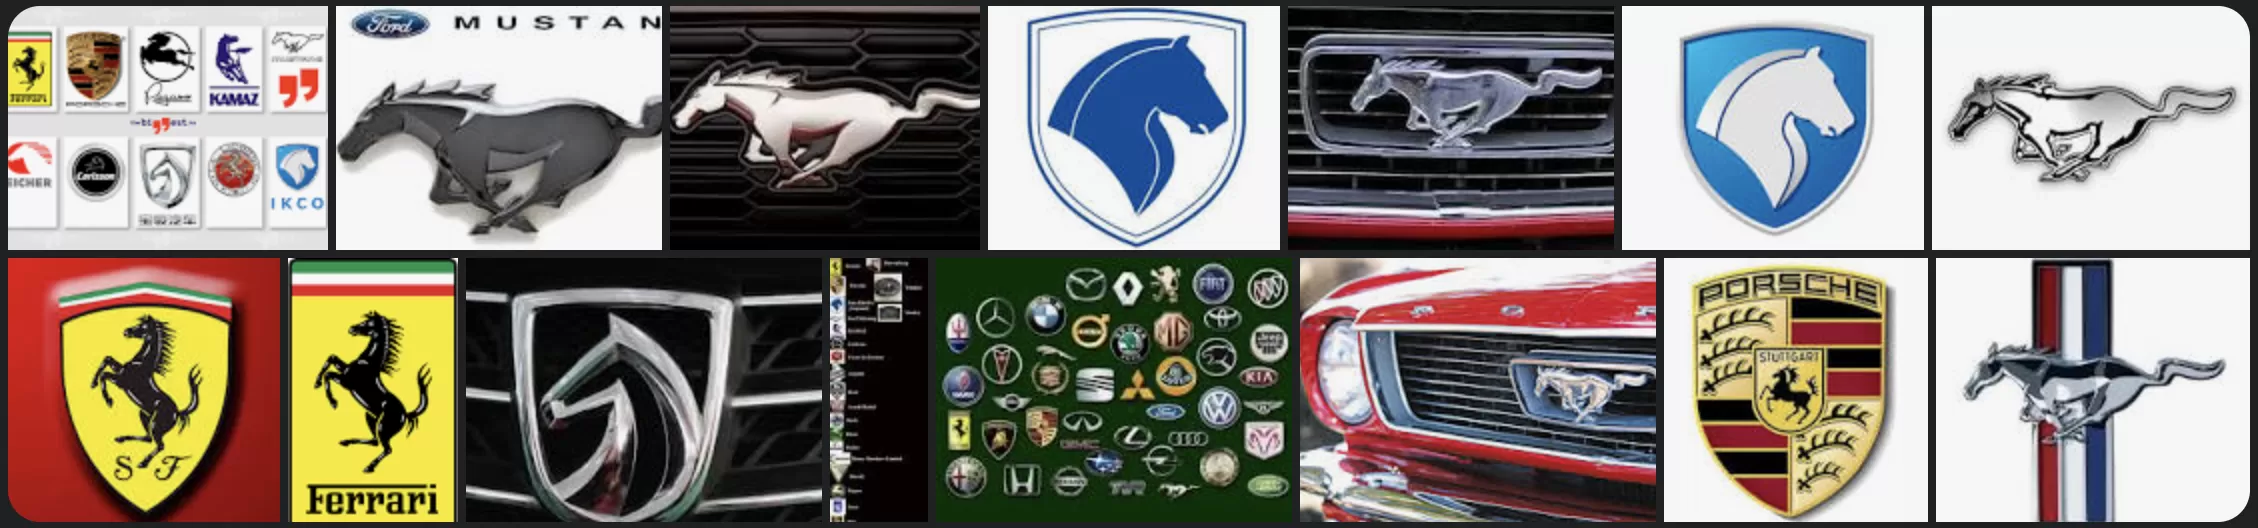 帶馬的汽車品牌 - 哪輛汽車上有帶馬的標誌？